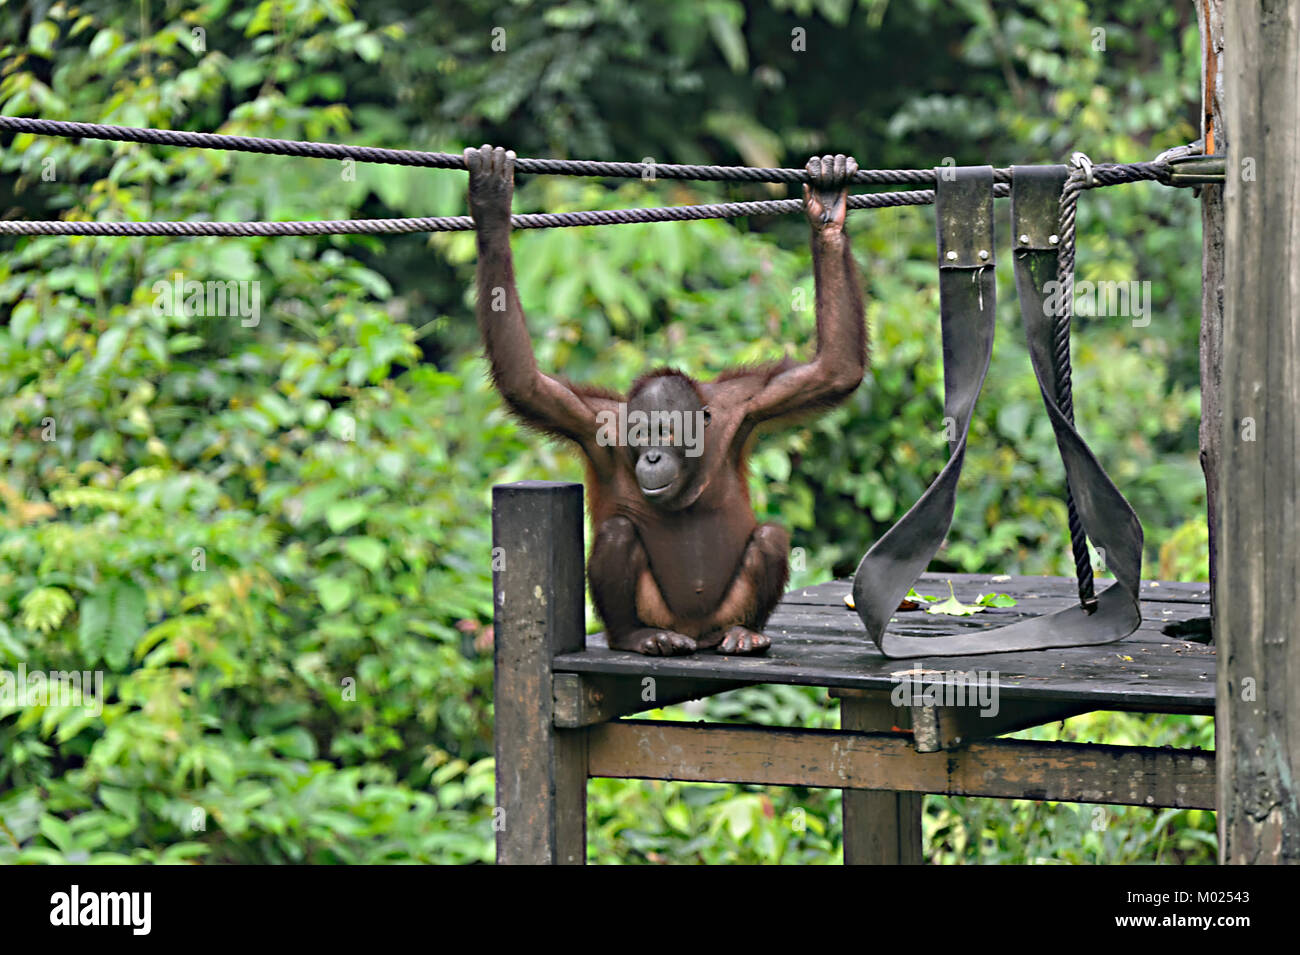 Young Orangutan playing in the nursery, Sepilok Orangutan Rehabilitation Centre, Borneo, Sabah, Malaysia Stock Photo